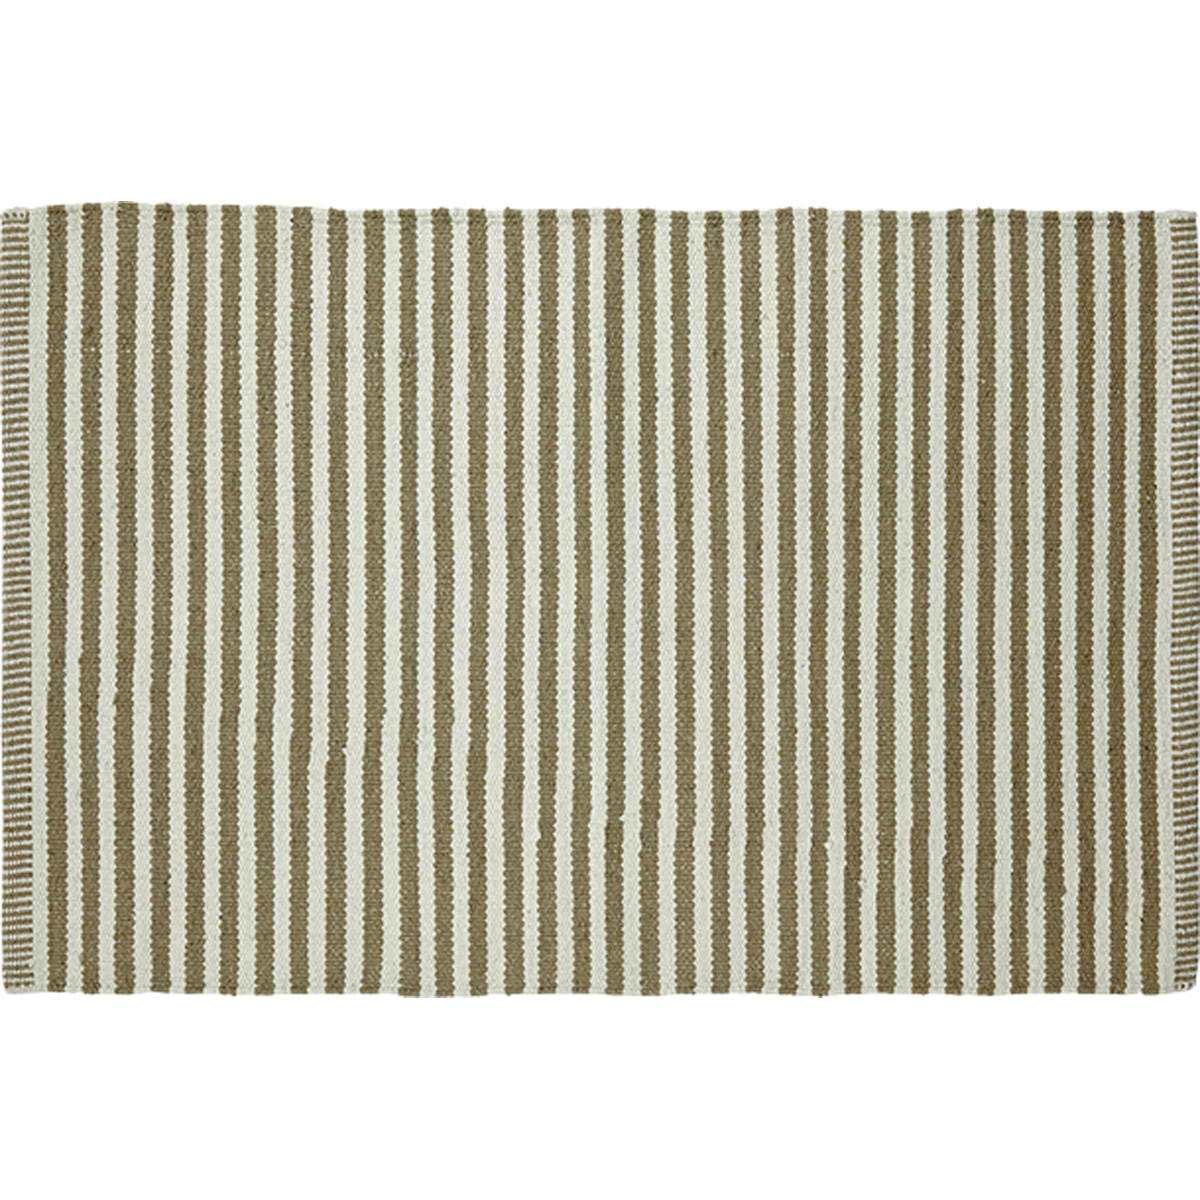 Liv Interior Teppich Paris 200 x 300 cm Streifen beige natur Baumwolle